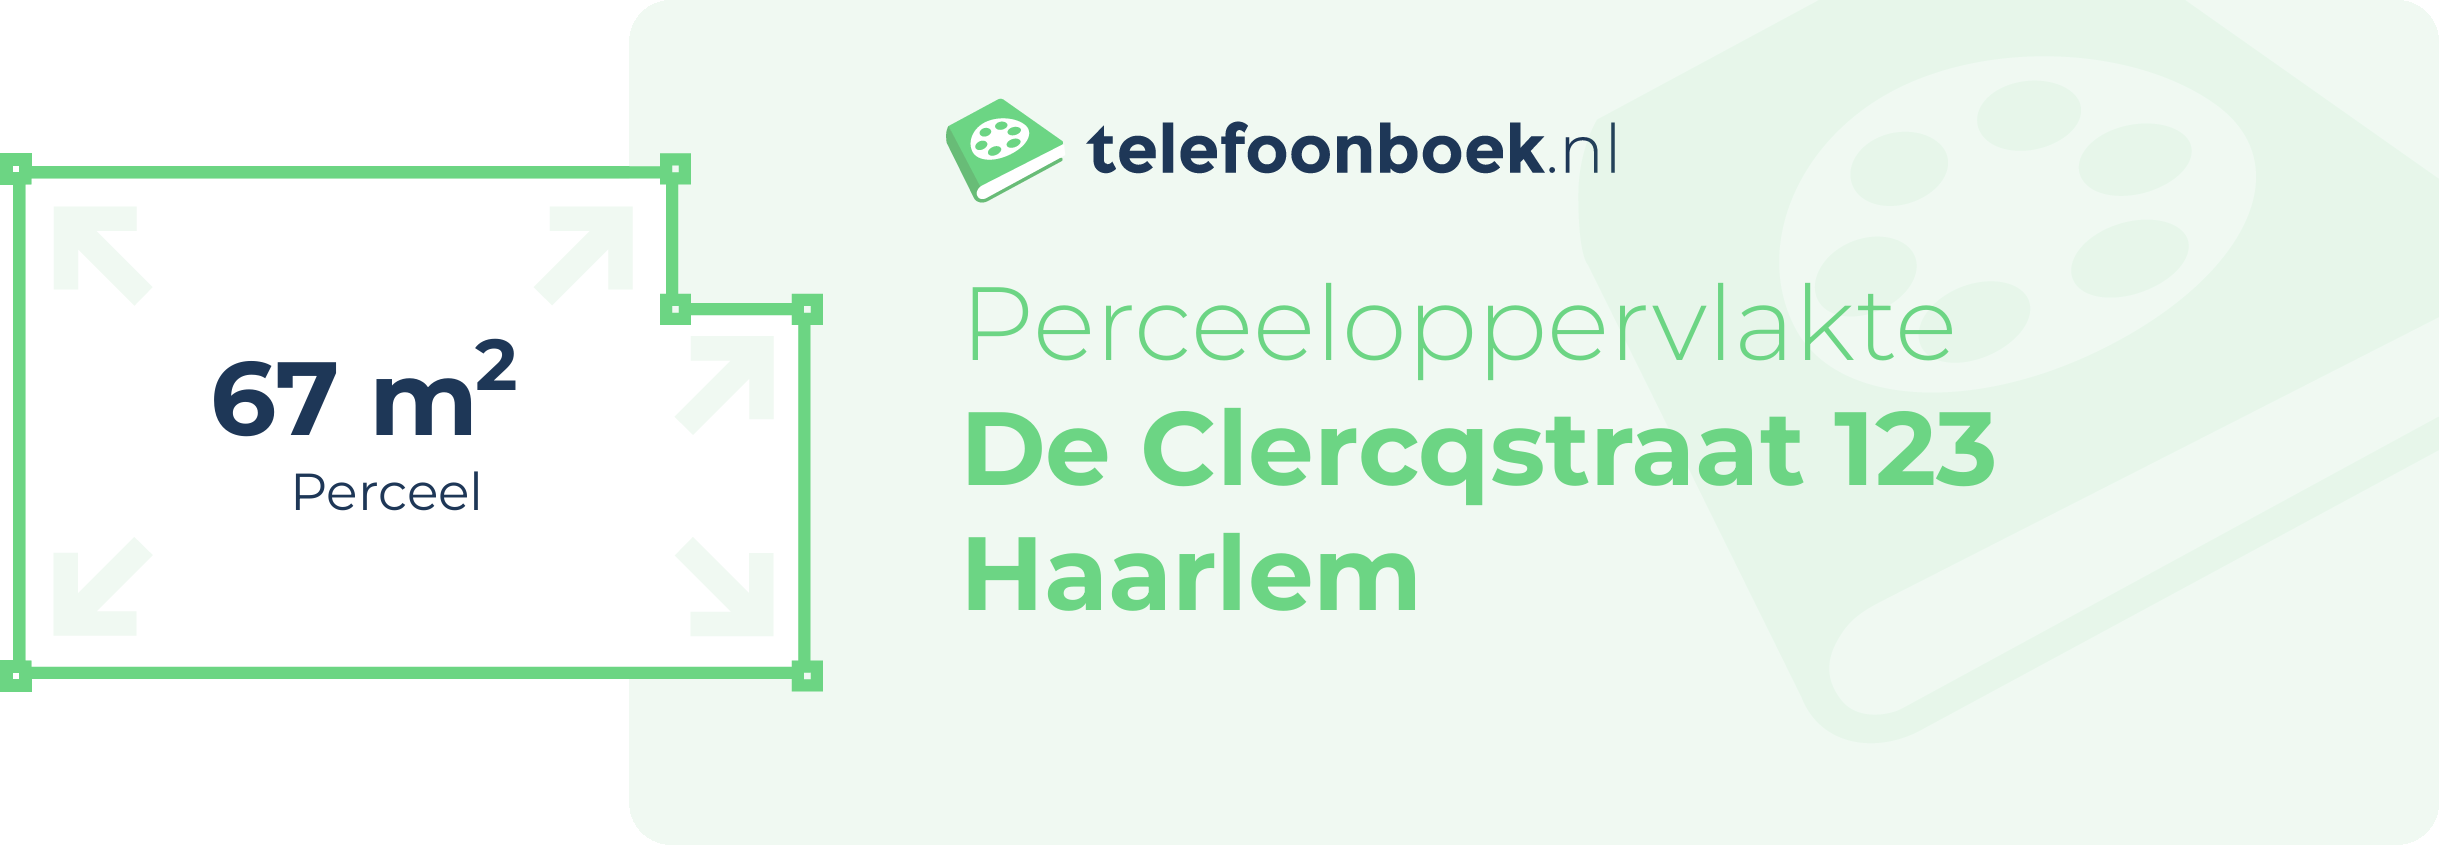 Perceeloppervlakte De Clercqstraat 123 Haarlem